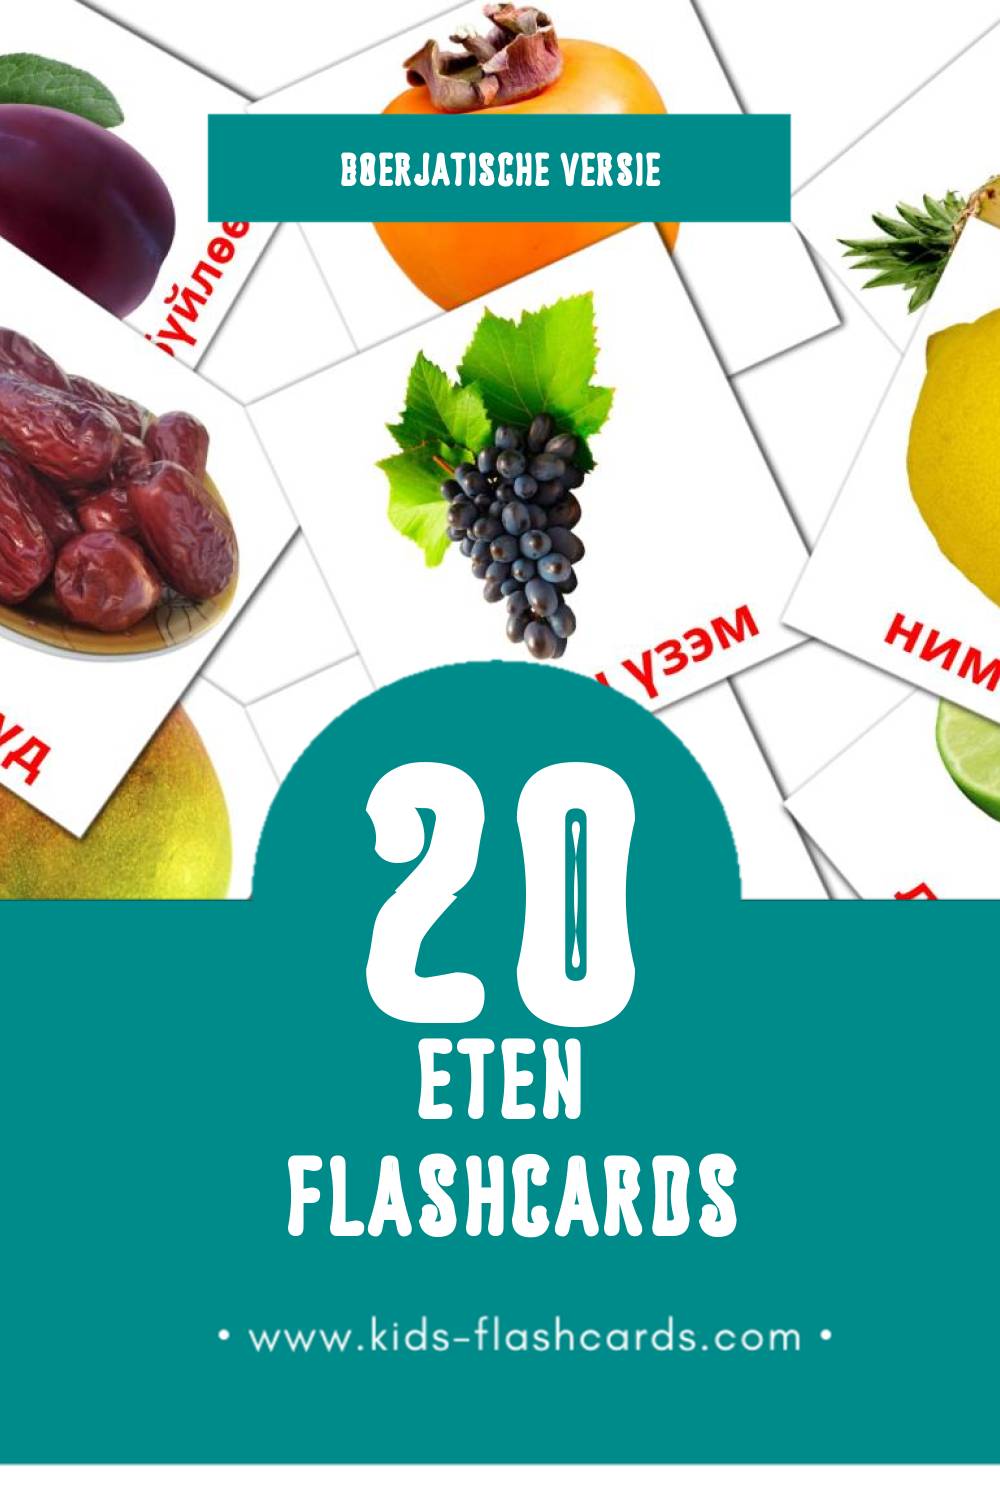 Visuele Эдеэн Flashcards voor Kleuters (20 kaarten in het Boerjatisch)